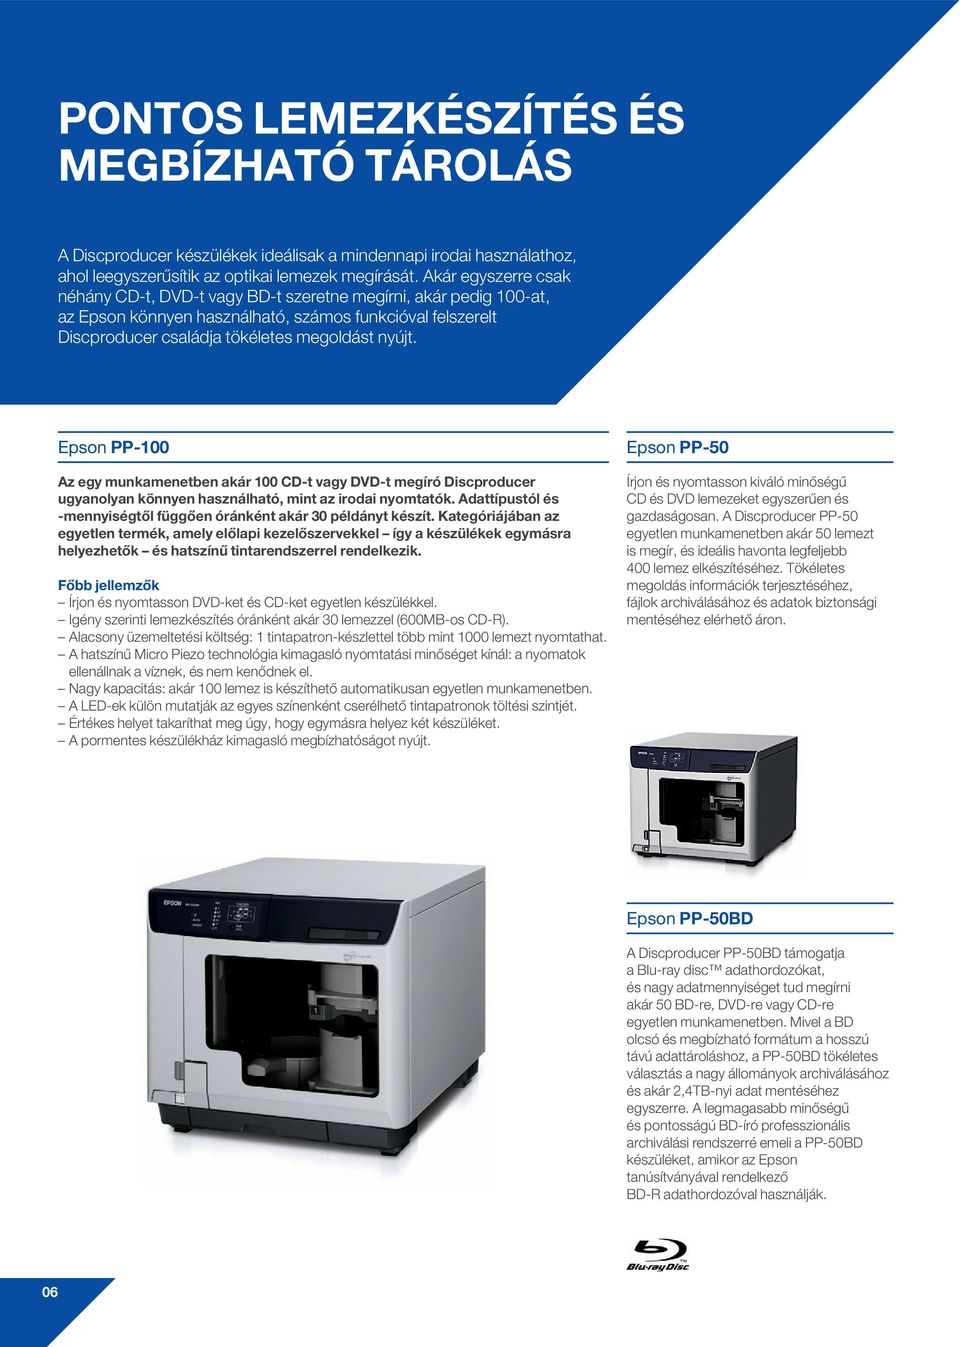 Epson PP-100 Az egy munkamenetben akár 100 CD-t vagy DVD-t megíró Discproducer ugyanolyan könnyen használható, mint az irodai nyomtatók.